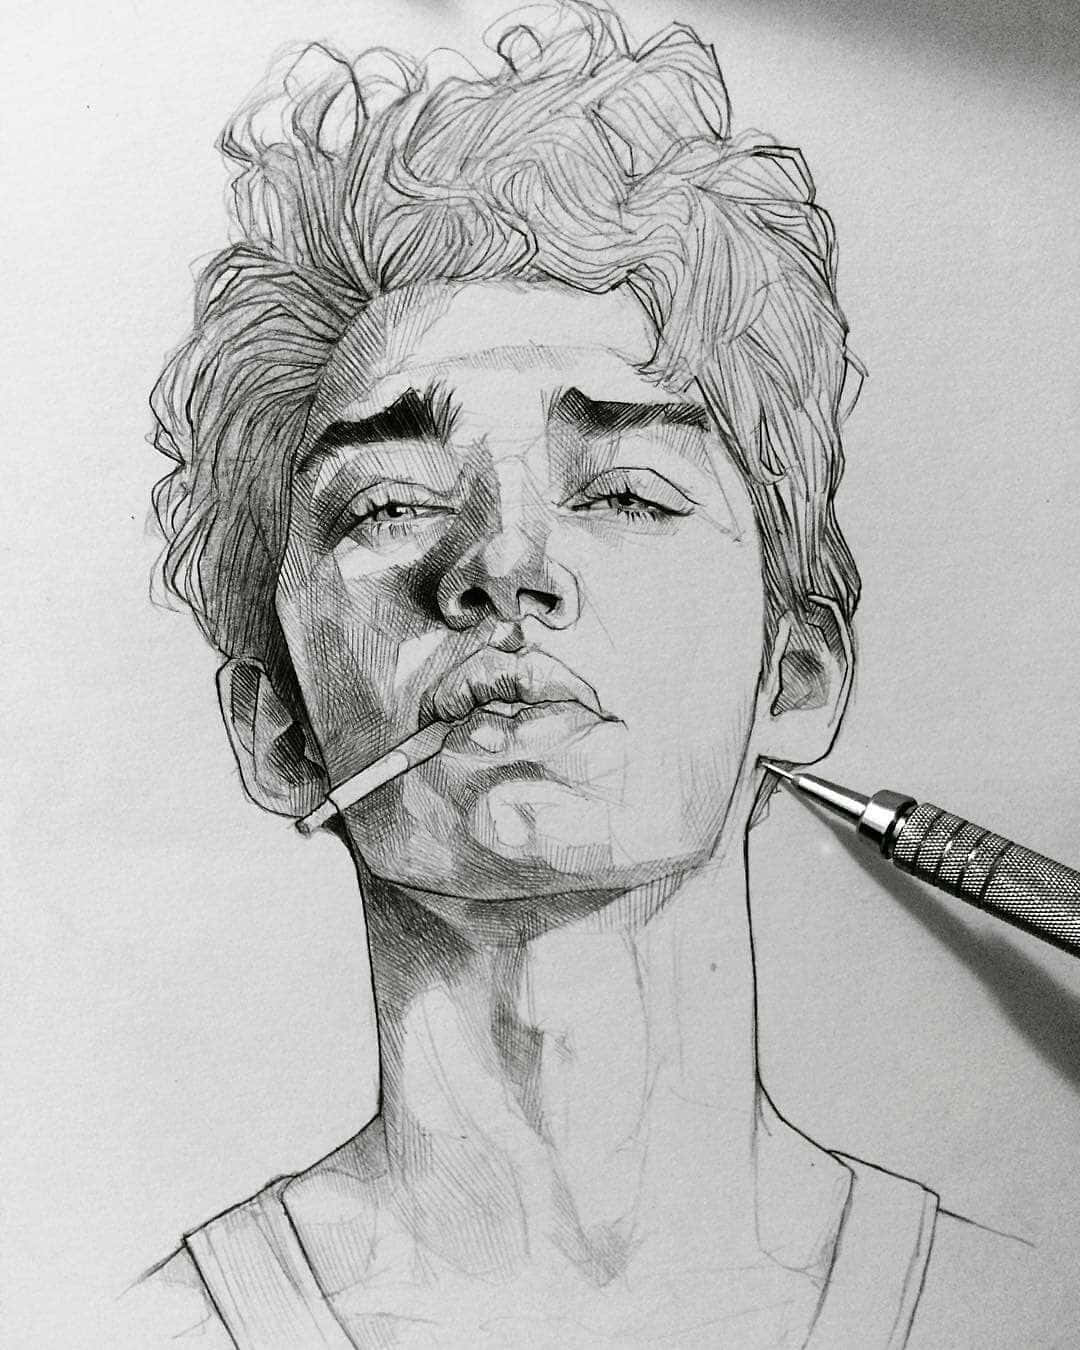 Imagende Arte De Boceto De Un Hombre Fumando